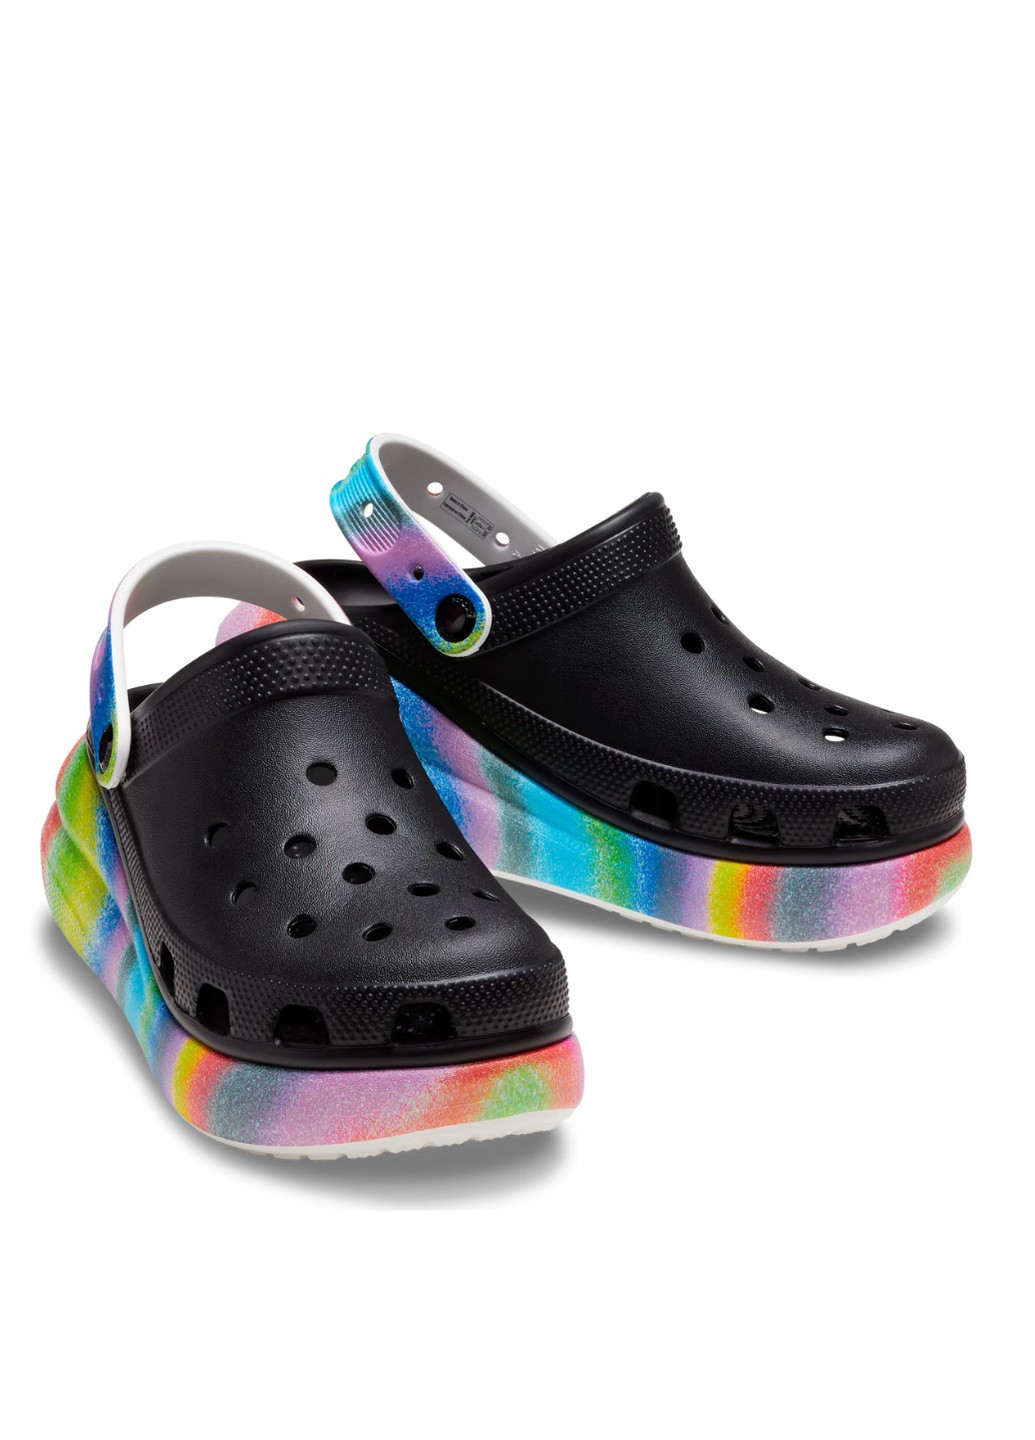 Цветные сабо на высокой платформе Crocs на высоком каблуке